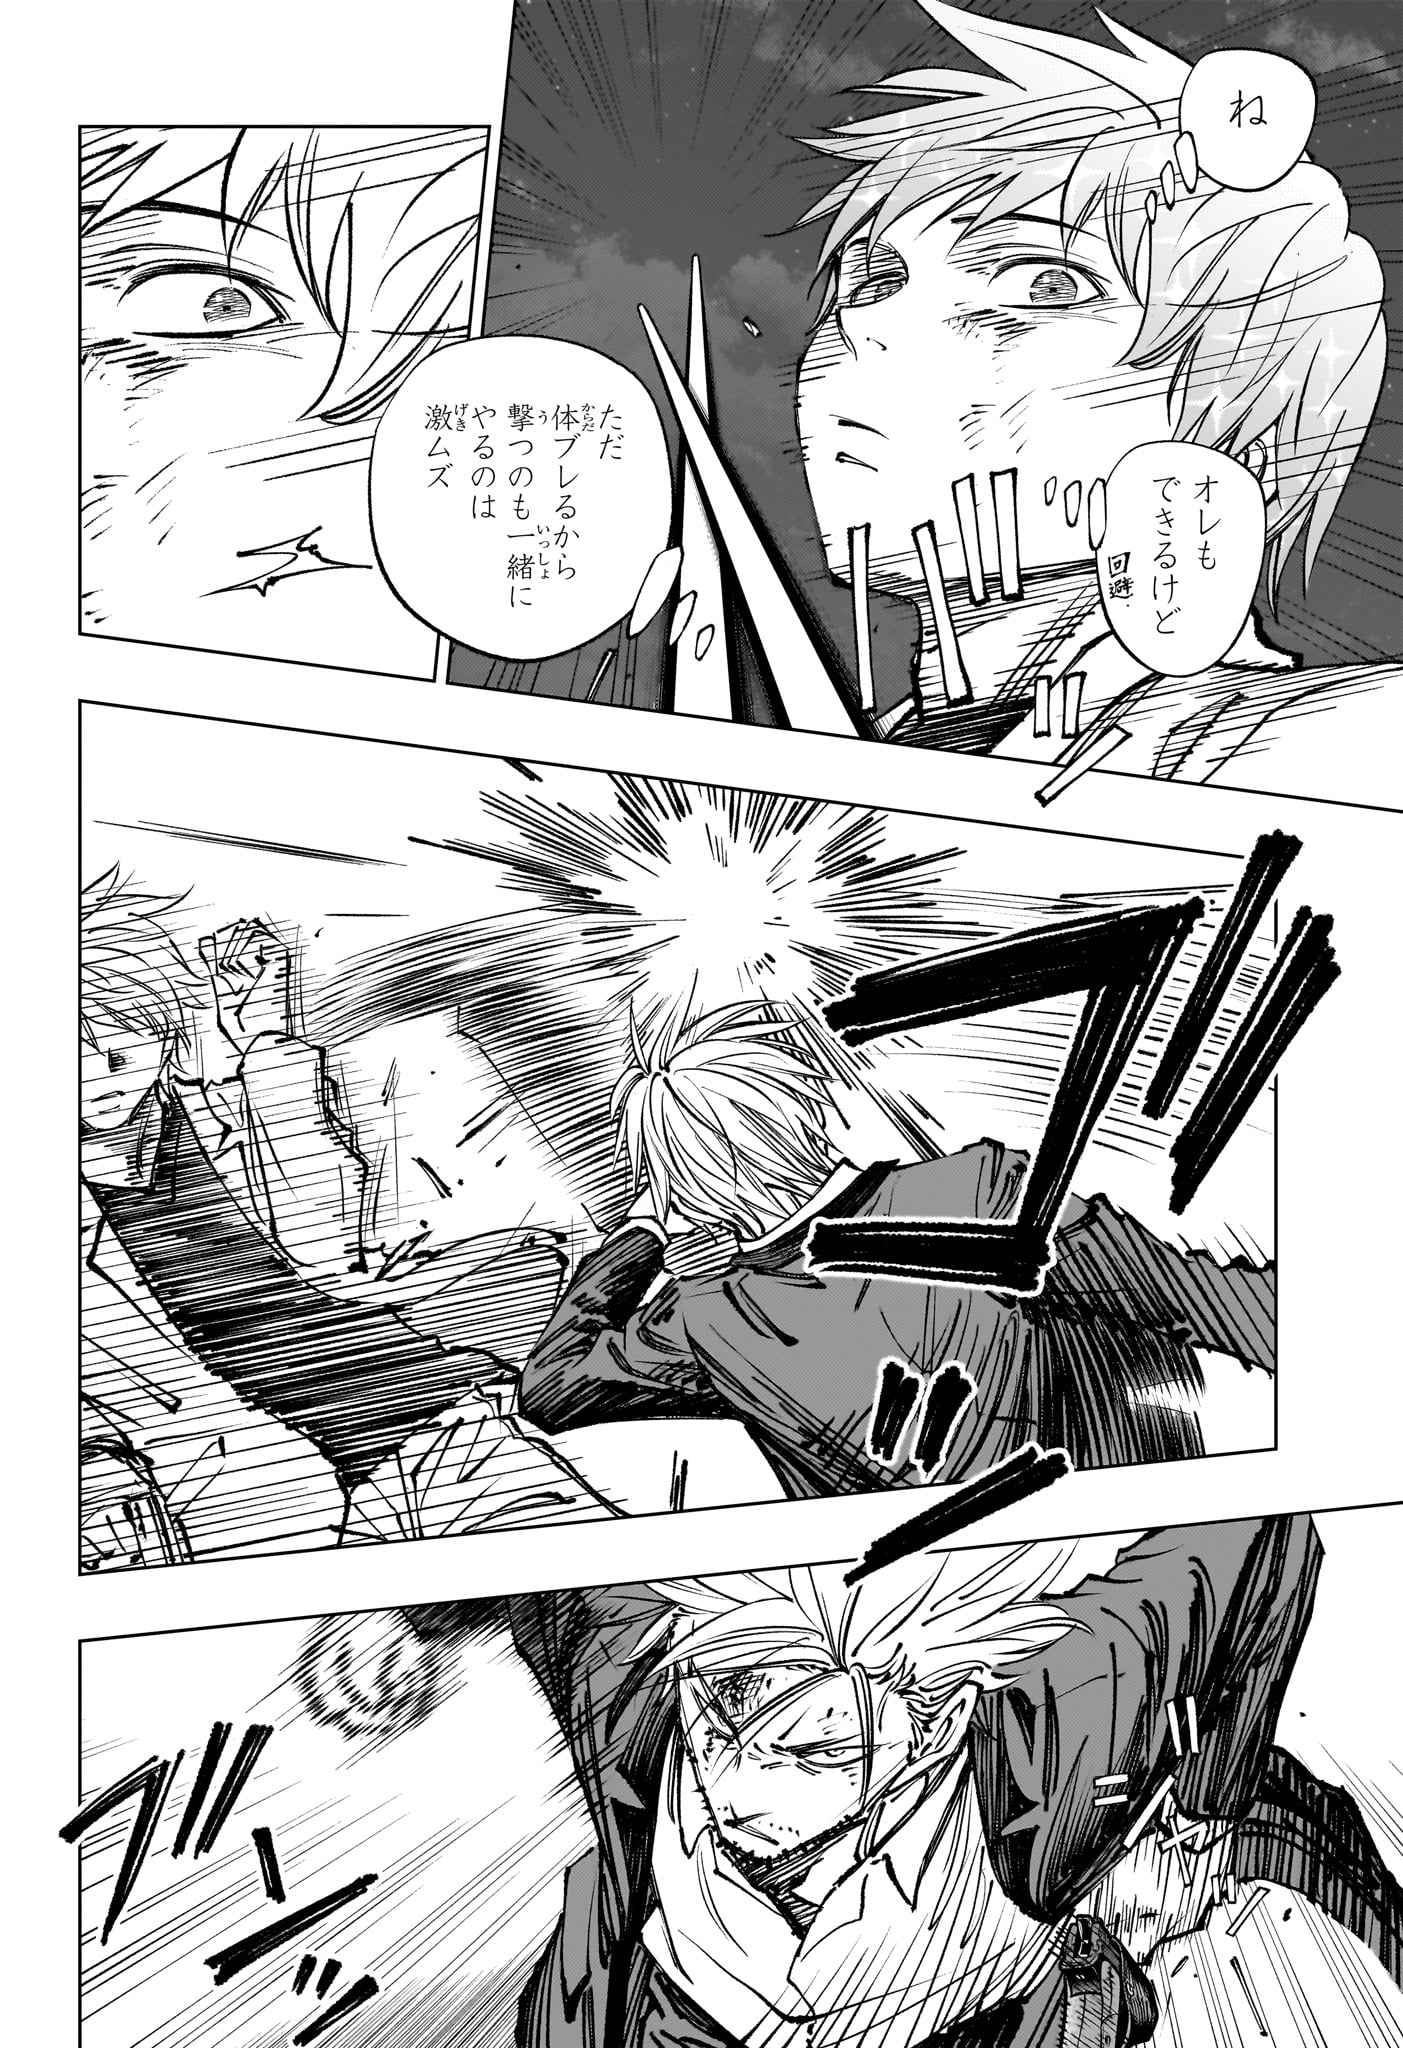 Kill Ao - Chapter 51 - Page 4